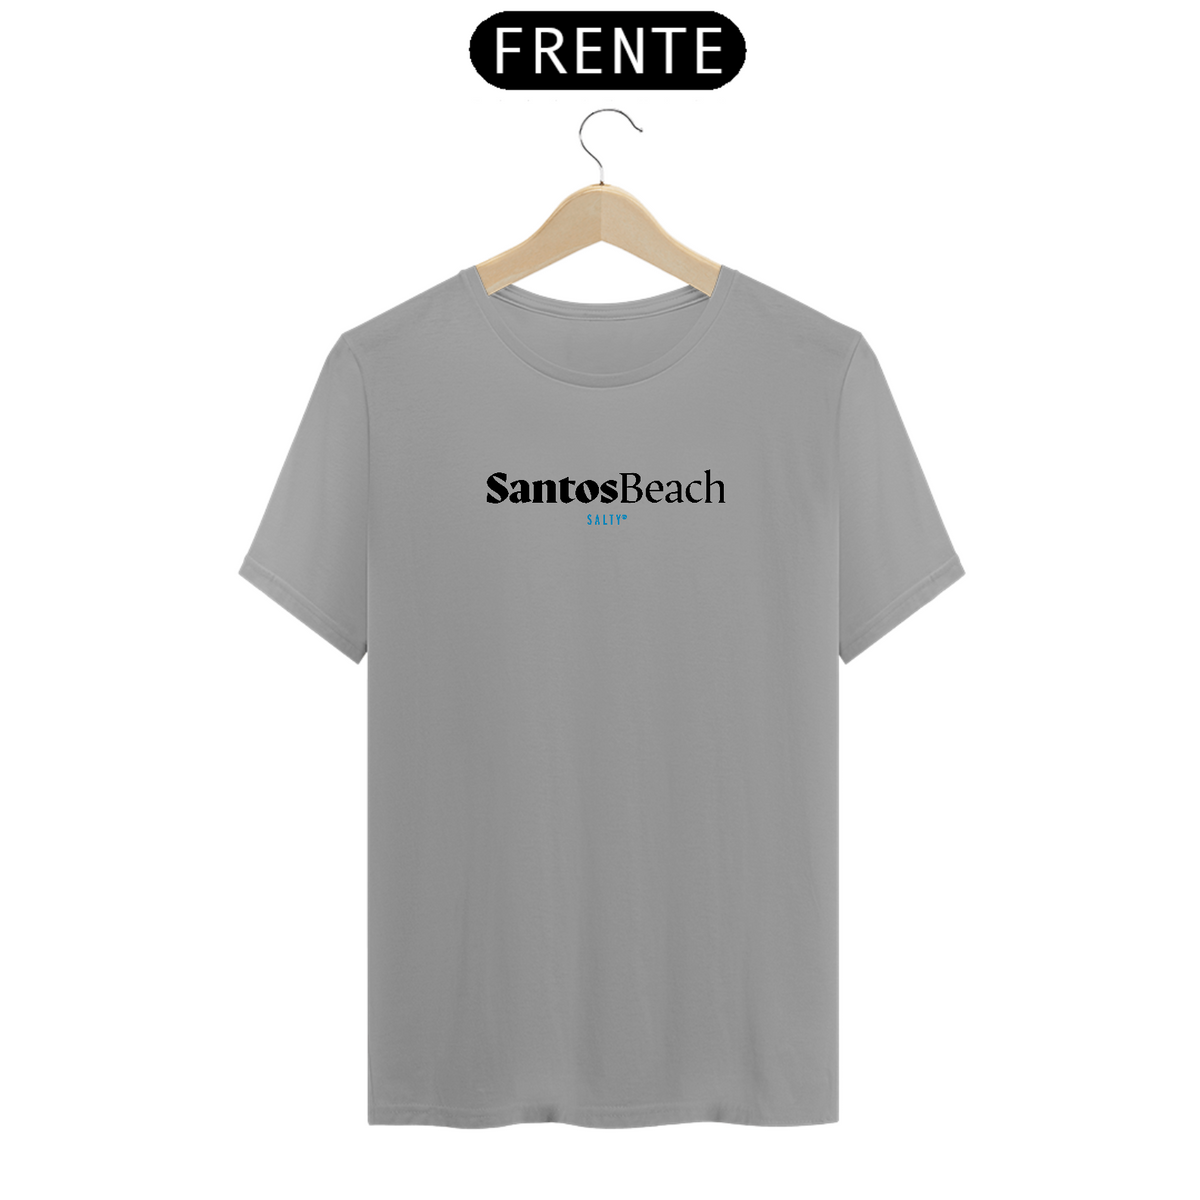 Nome do produto: T-Shirt SantosBeach